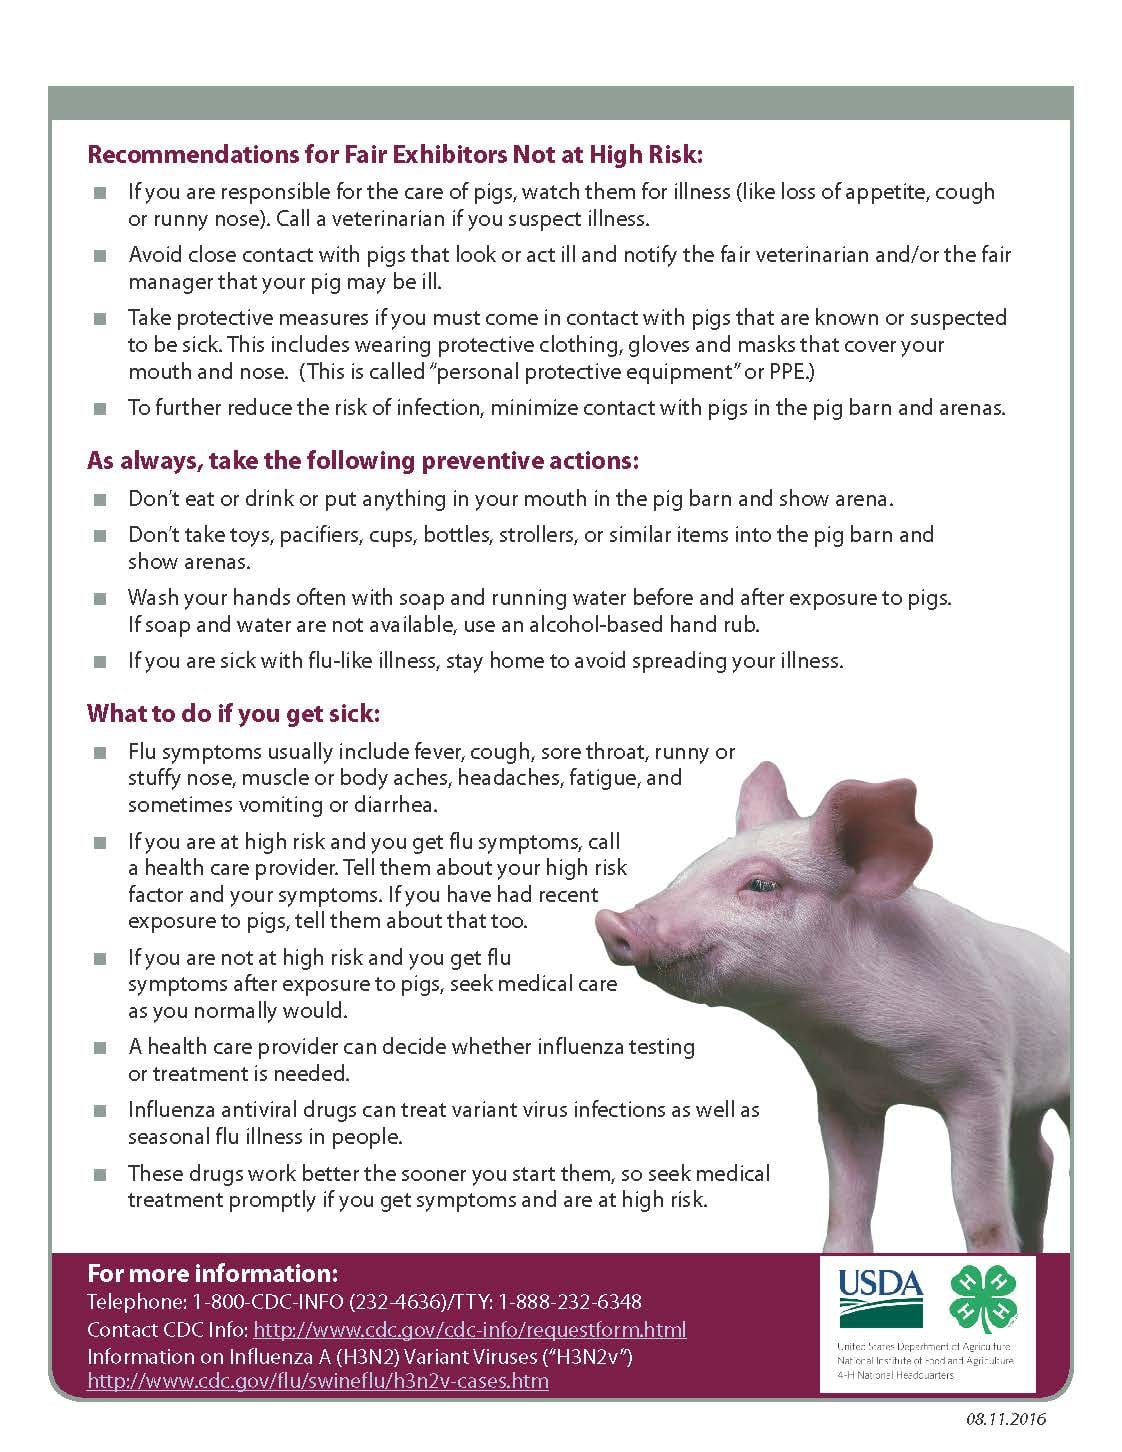 Swine Chart